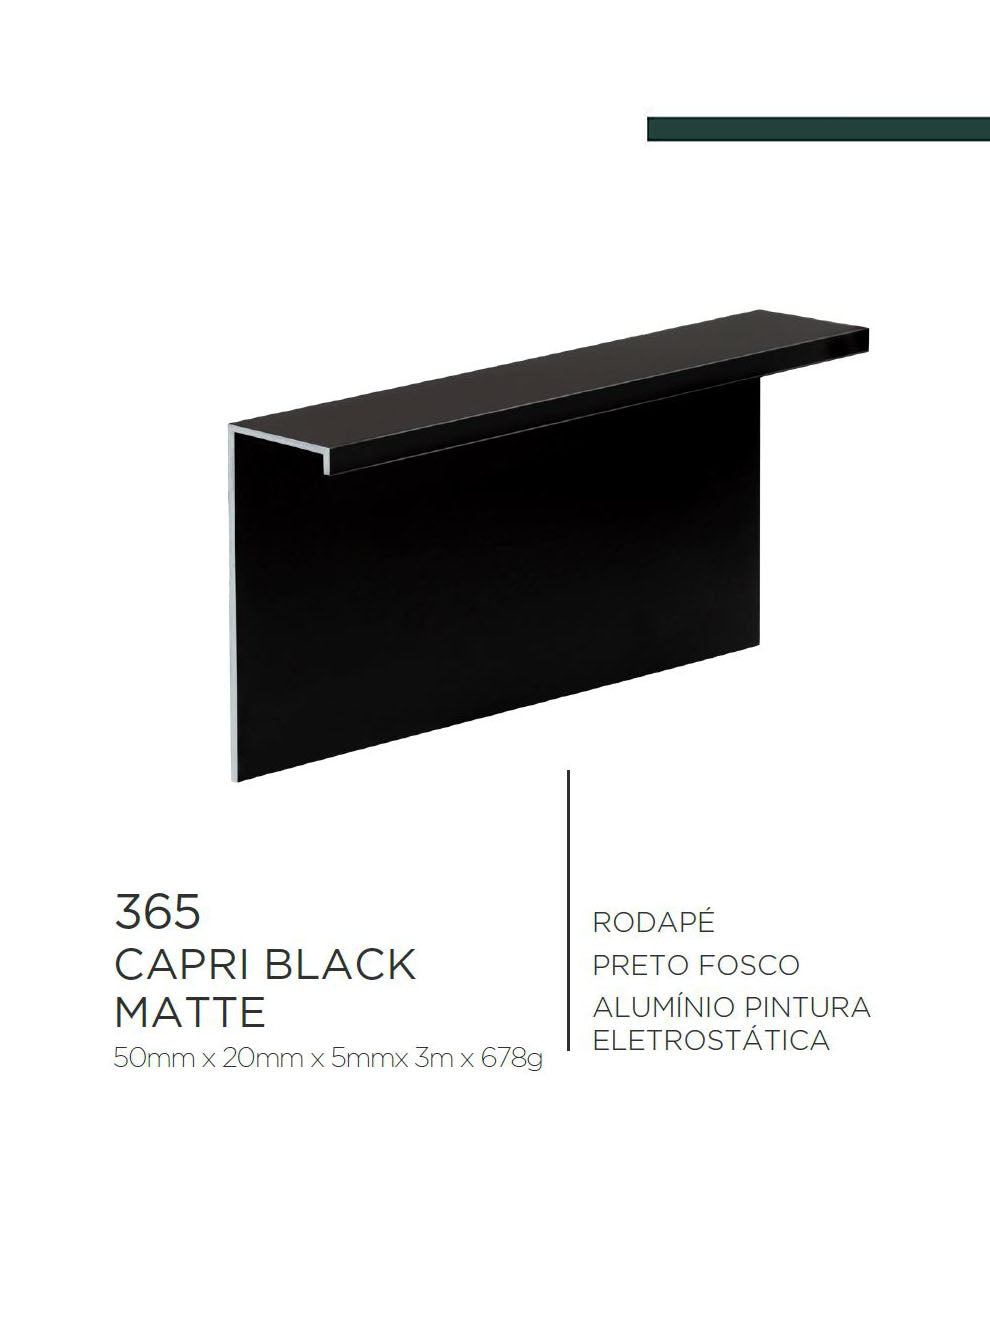 Viscardi - Perfil Capri Black Matte 295 Preto Fosco 20mm x 50mm x 5mm x 3m (5 peças)